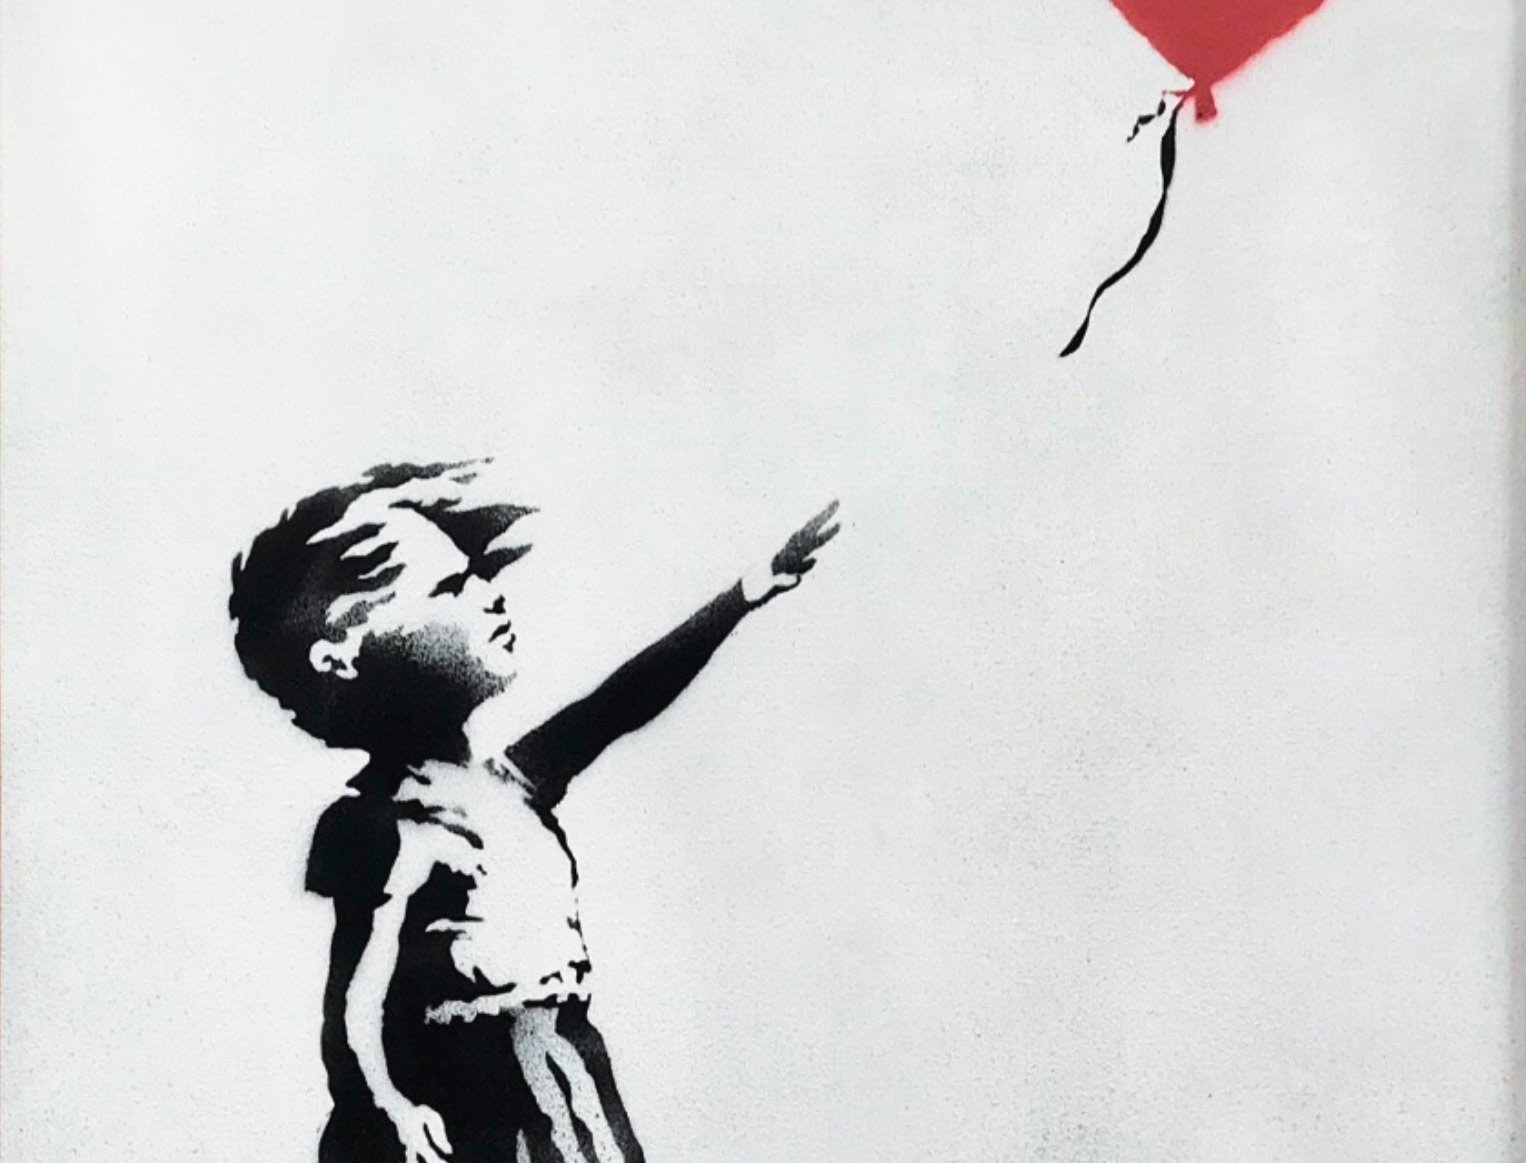 Come ha fatto Banksy a distruggere la sua opera?